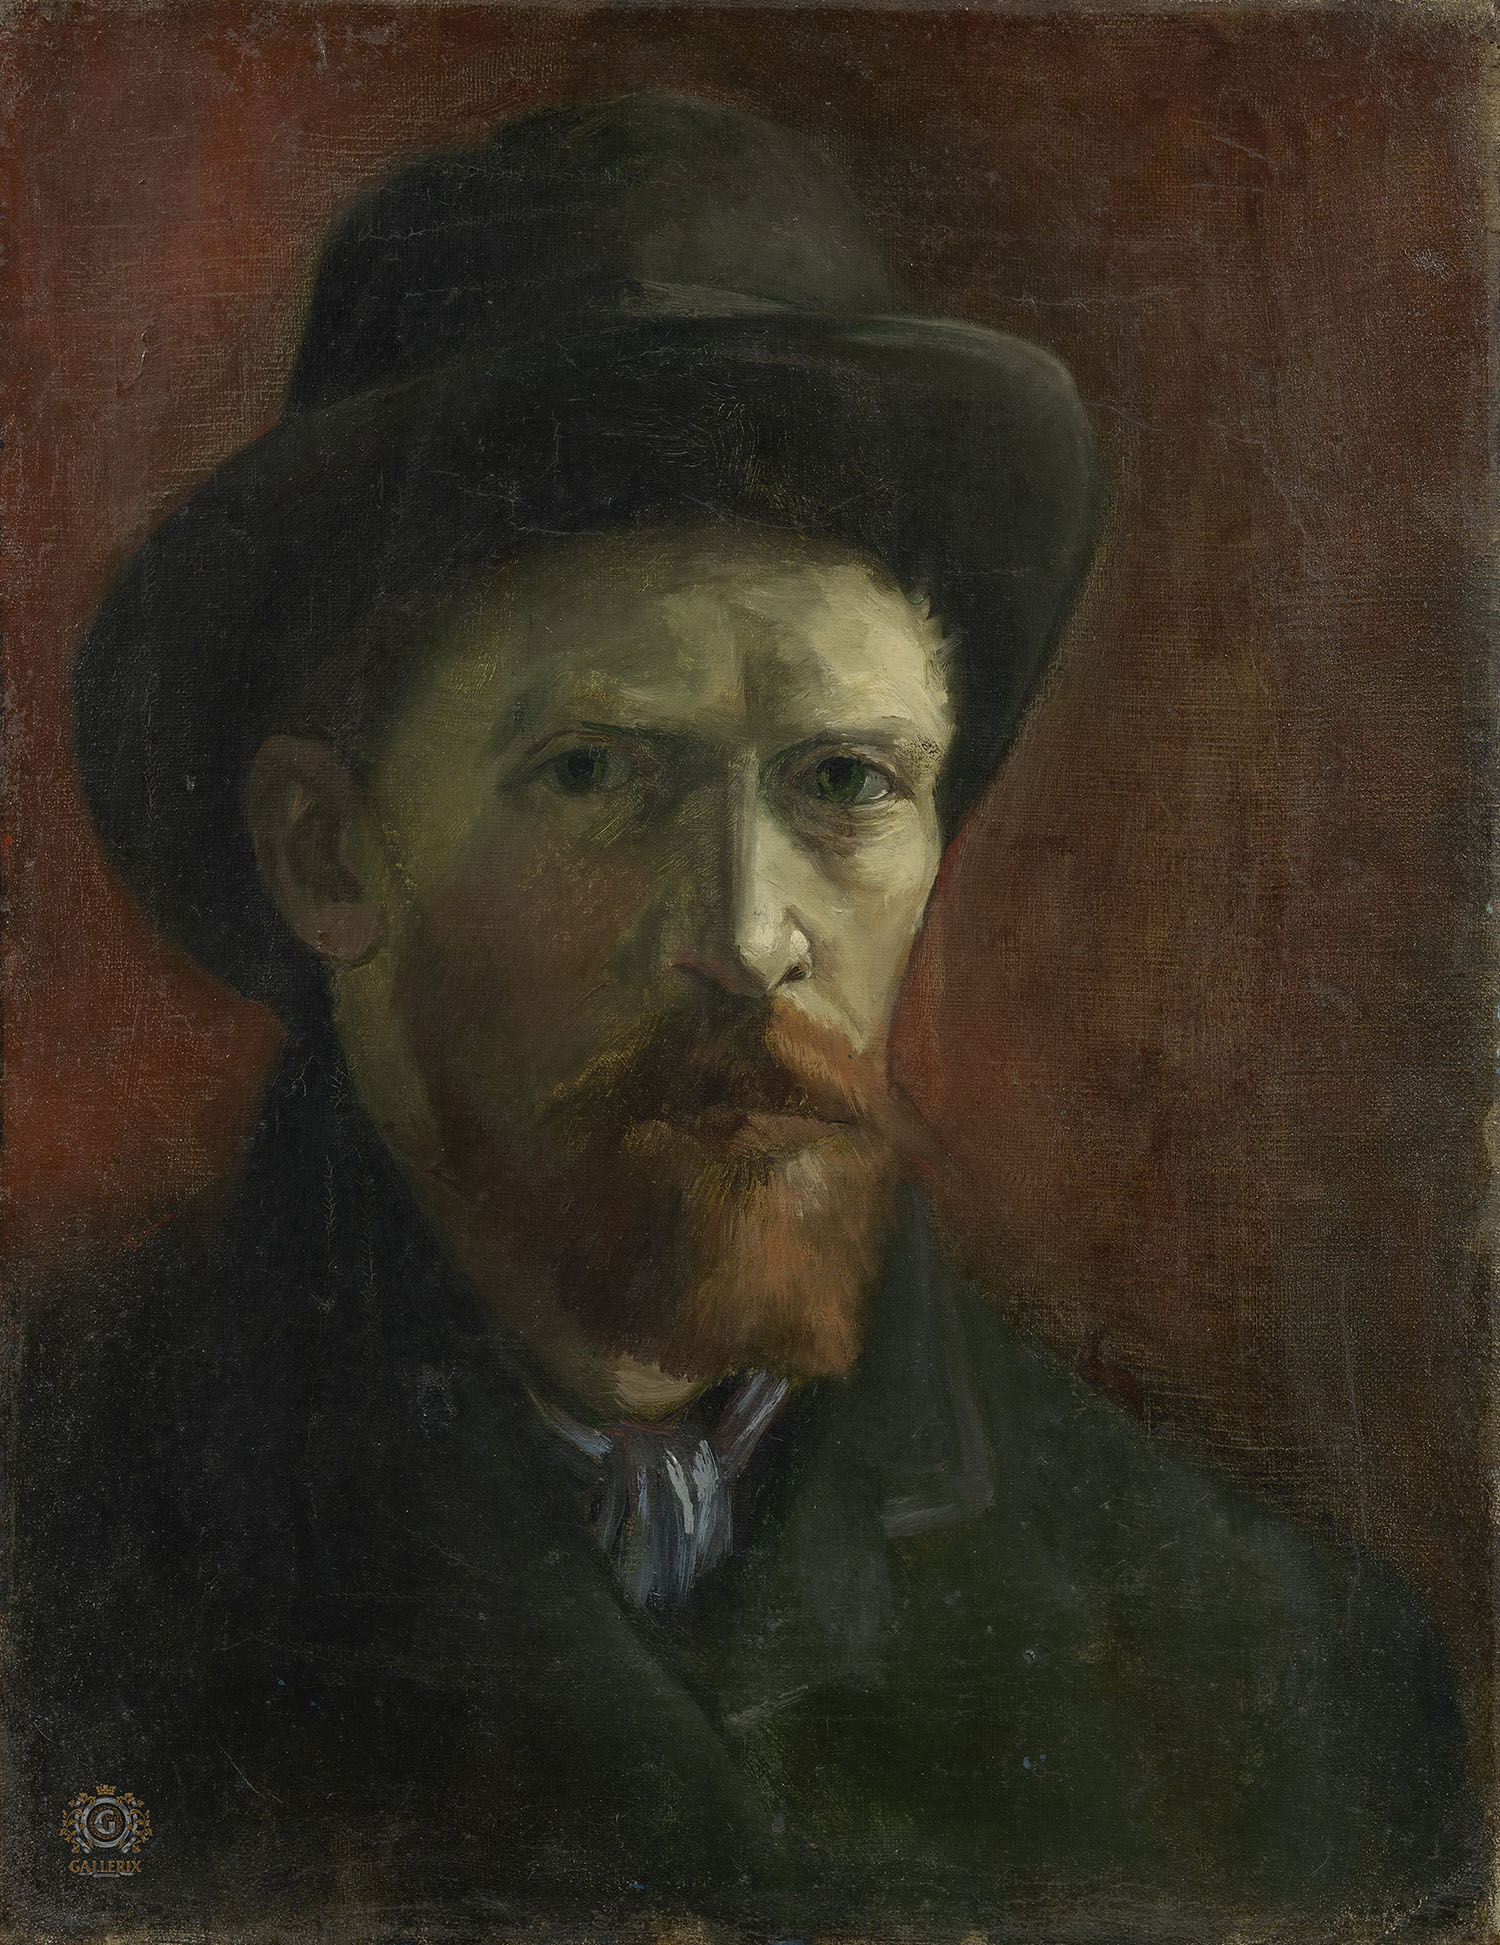 Винсент Ван Гог. "Автопортрет в чёрной фетровой шляпе". 1886. Музей Ван Гога, Амстердам.